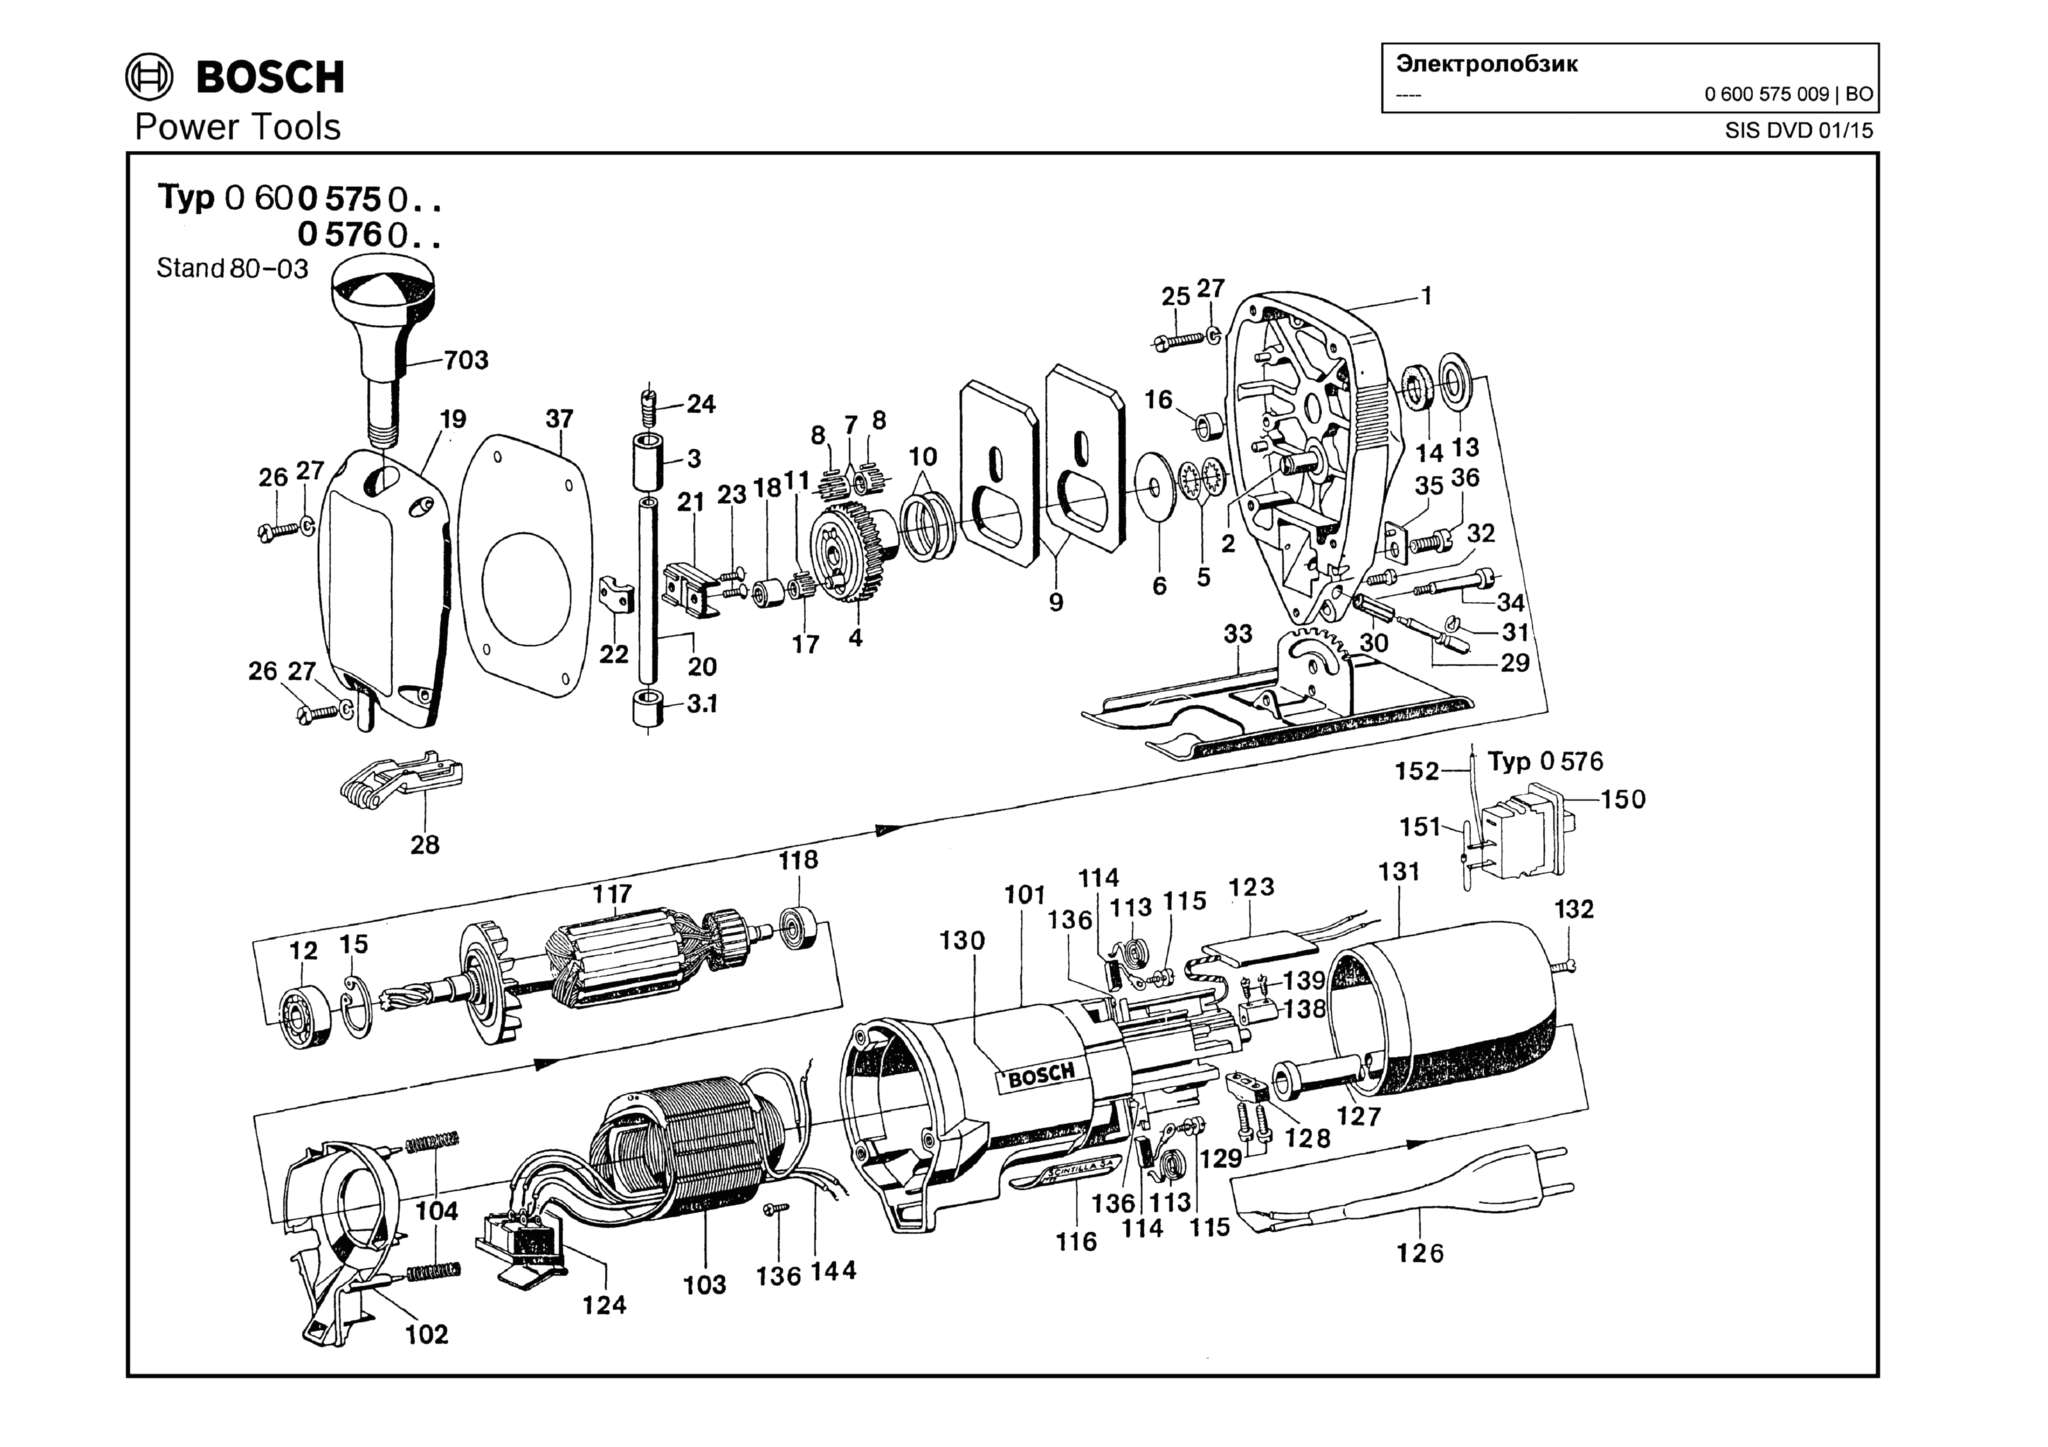 Запчасти, схема и деталировка Bosch (ТИП 0600575009)